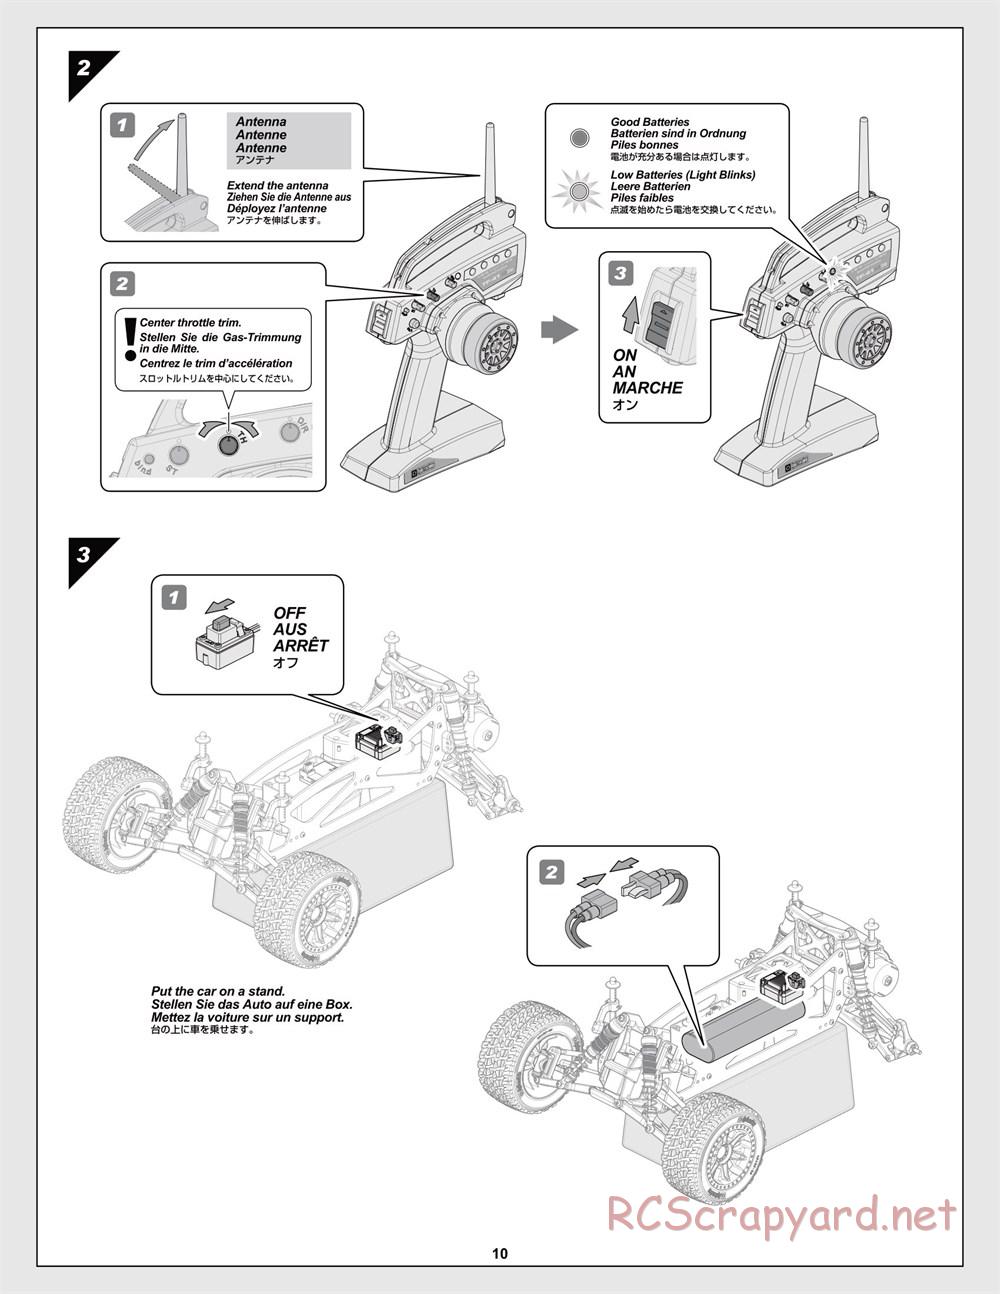 HPI - Jumpshot MT Flux - Manual - Page 10